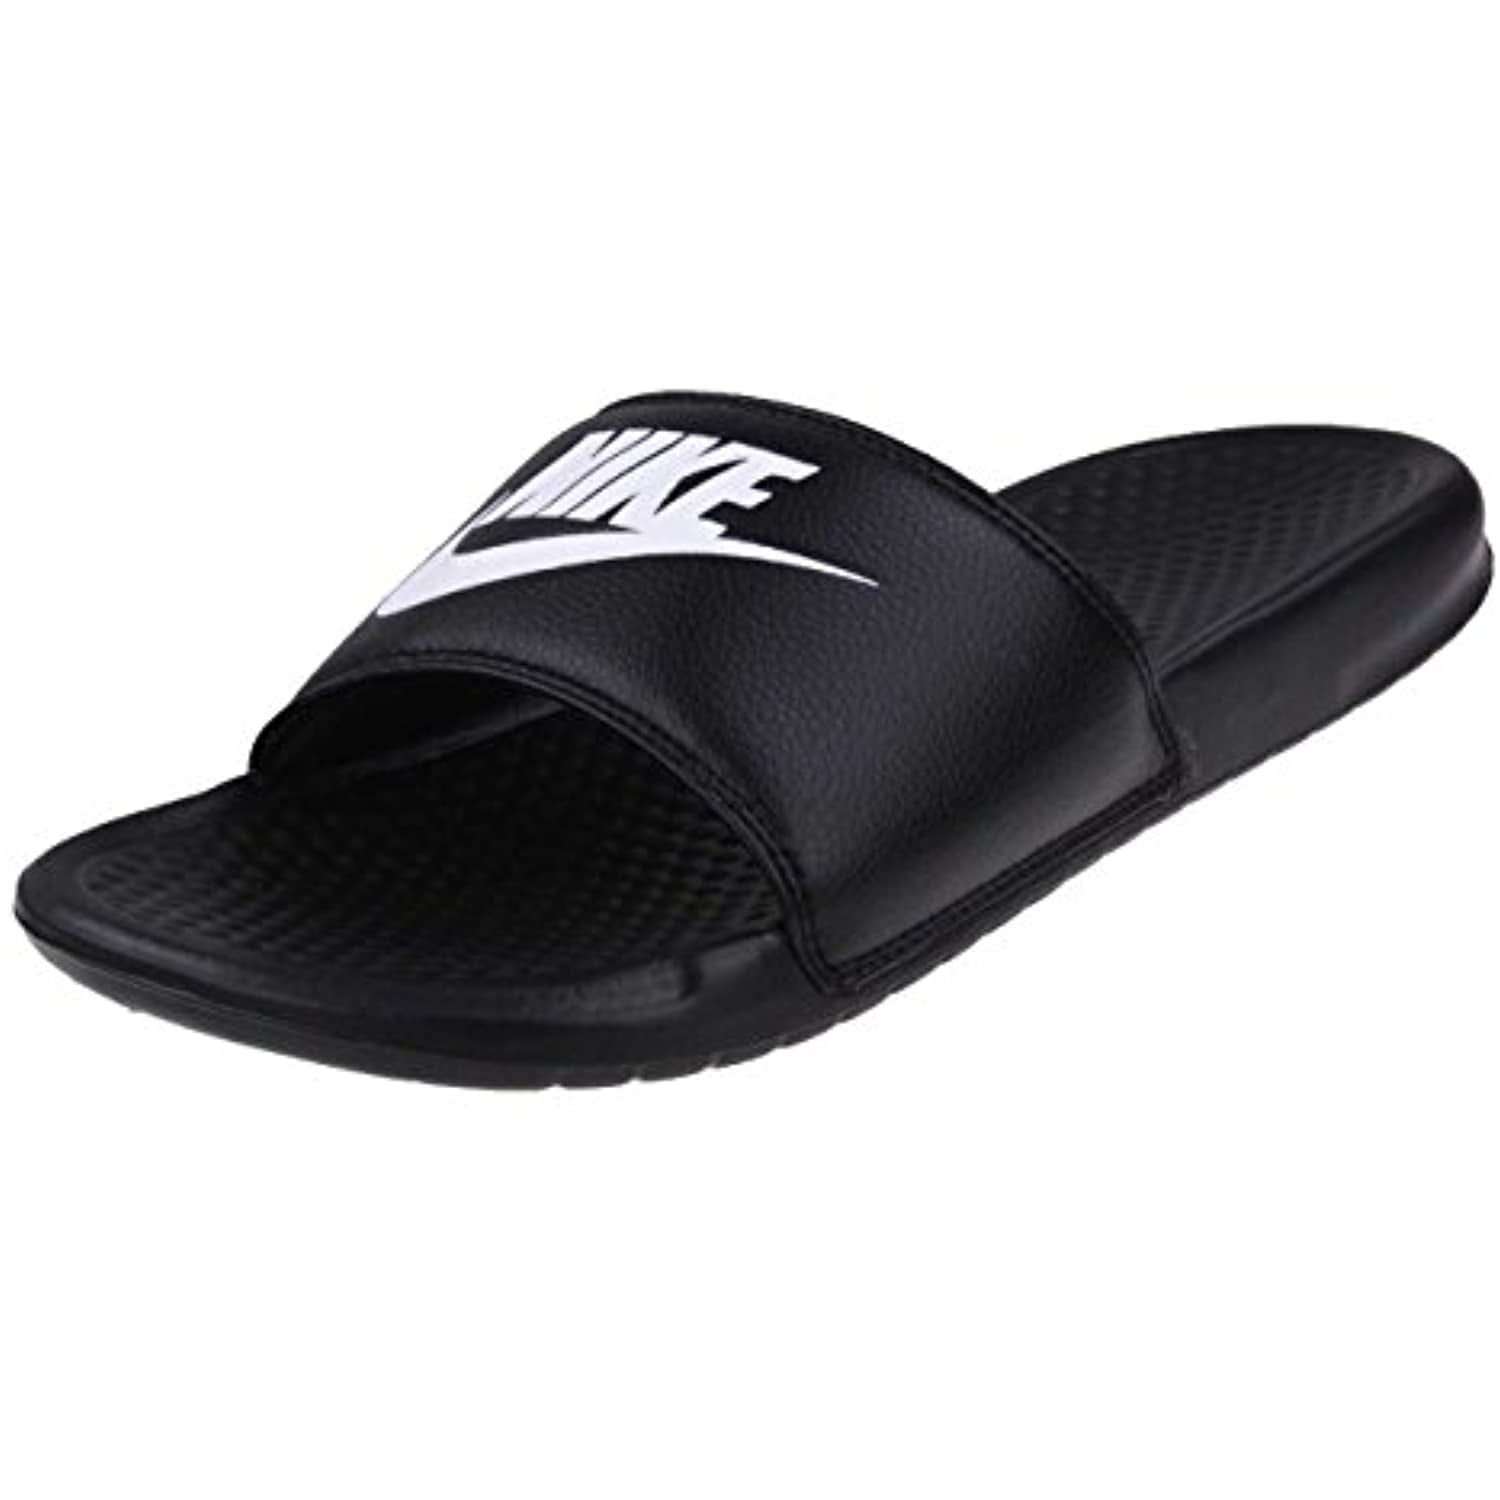 Nike Men's Just Do It Athletic Sandal, Black/White Noir/Blanc, 11.0 Regular US - Walmart.com